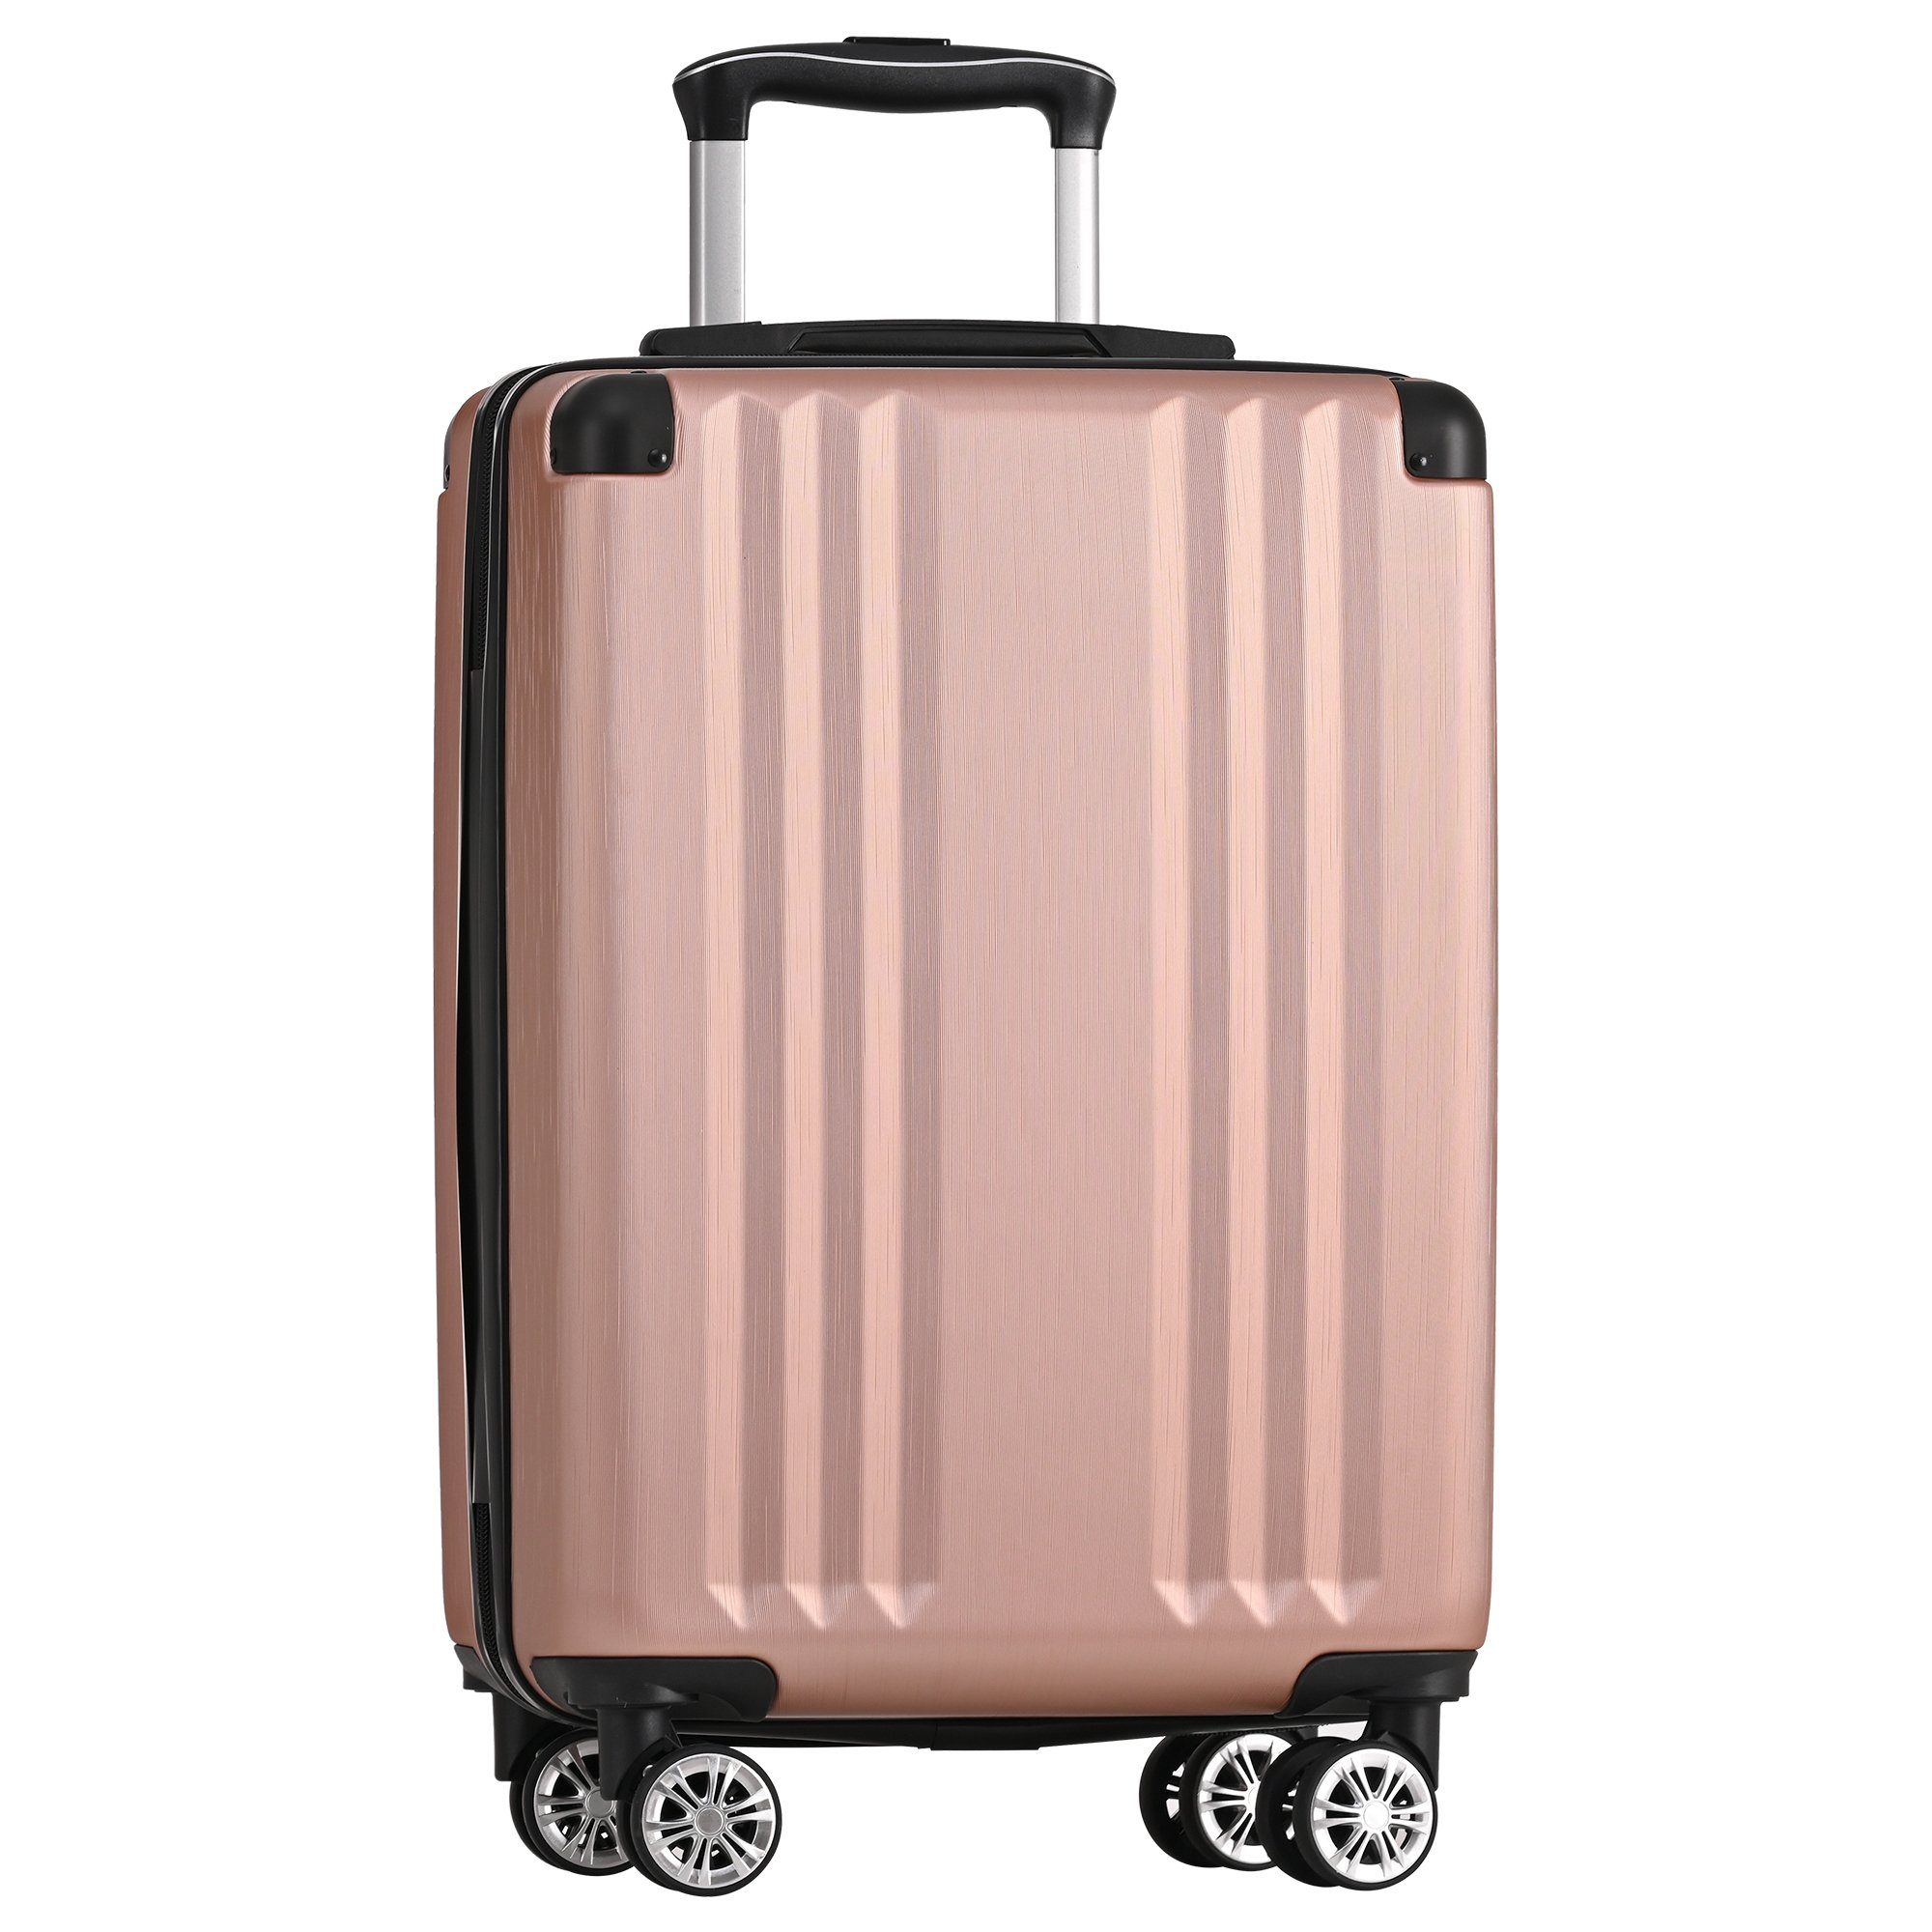 4 Zollschloss, ABS-Material, Ulife M-Größe:56.5*37.5*22.5 Rollen, Handgepäck-Trolley Reisekoffer Pink TSA